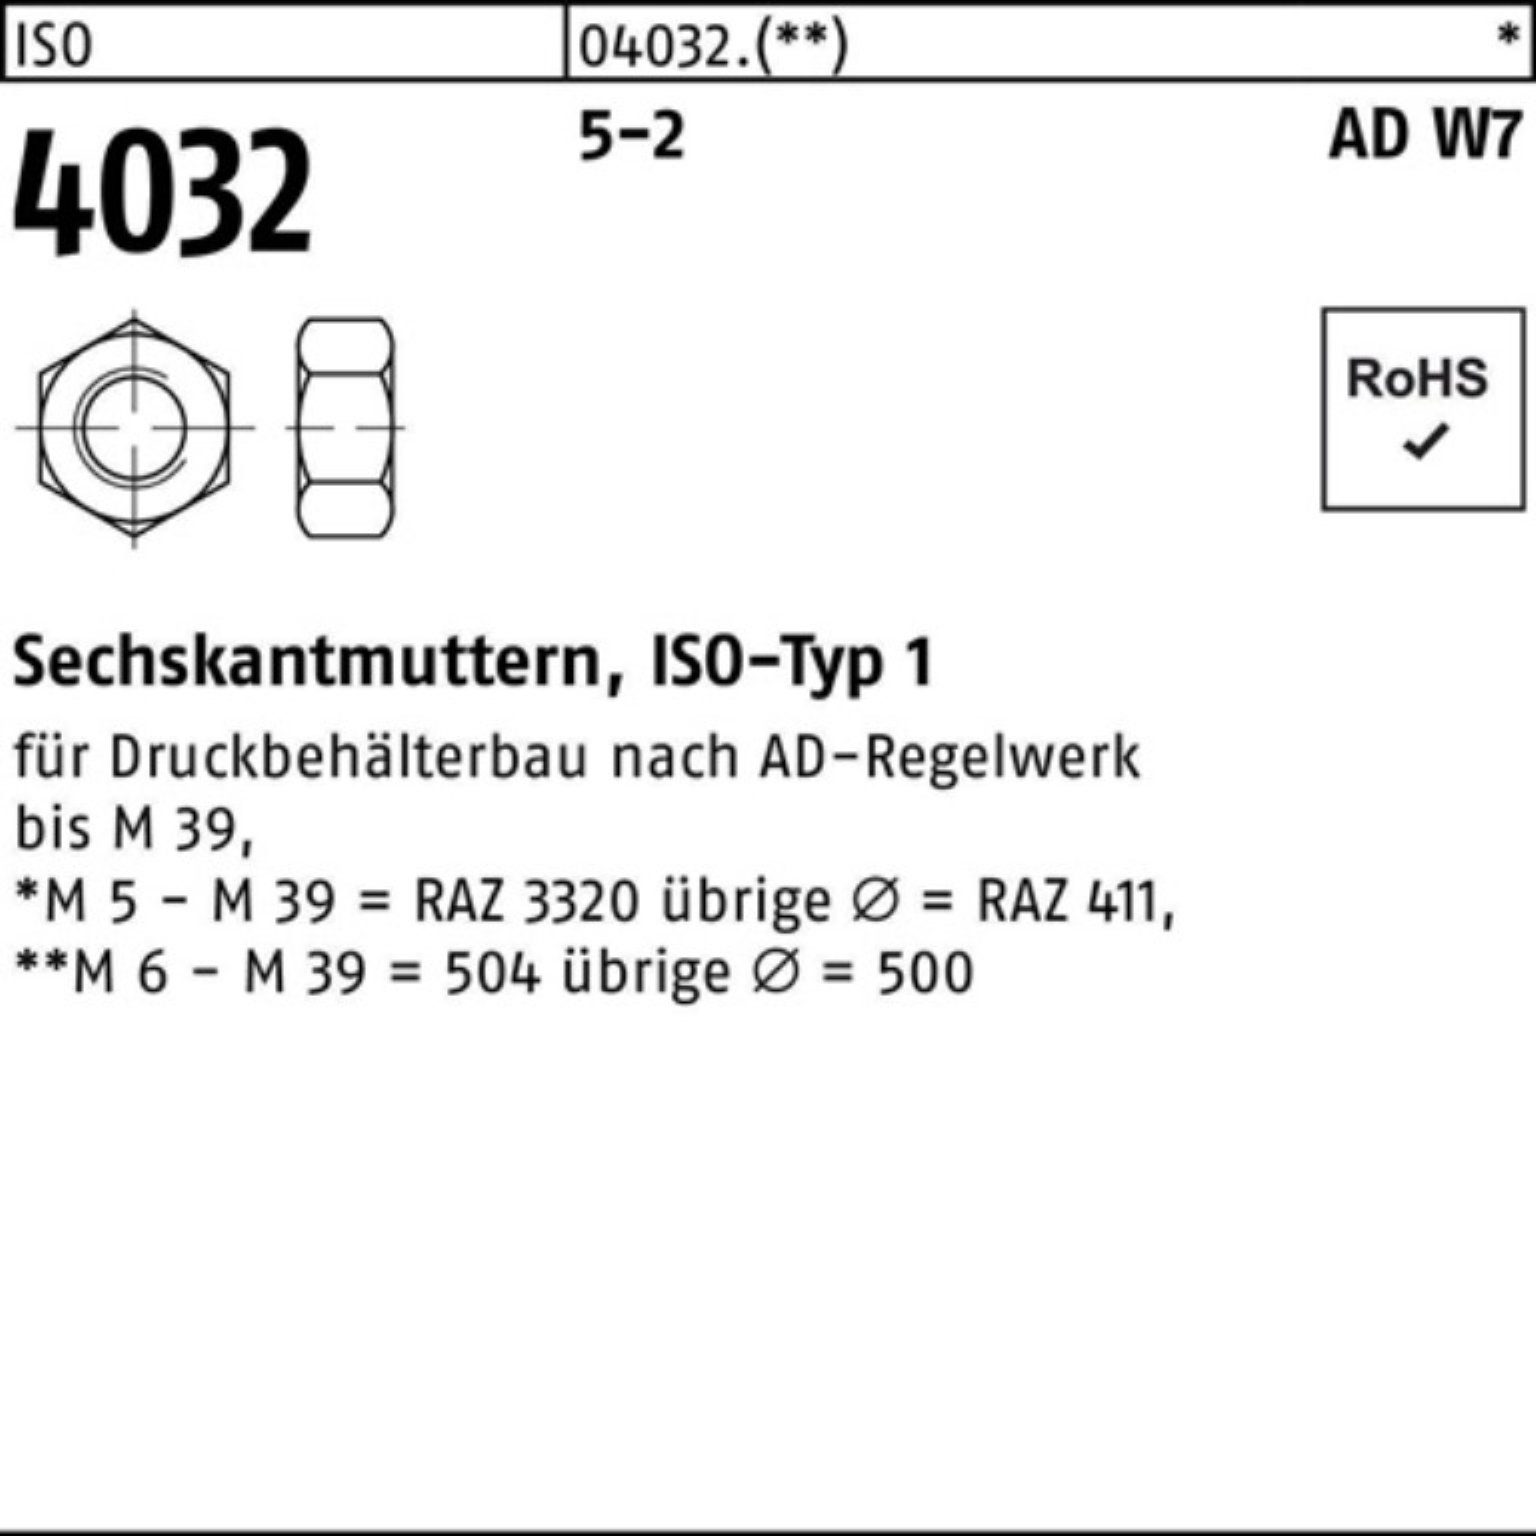 Bufab Muttern AD ISO 5-2 100er 106 Sechskantmutter 1 W7/TRD M42 Stück 4032 ISO Pack